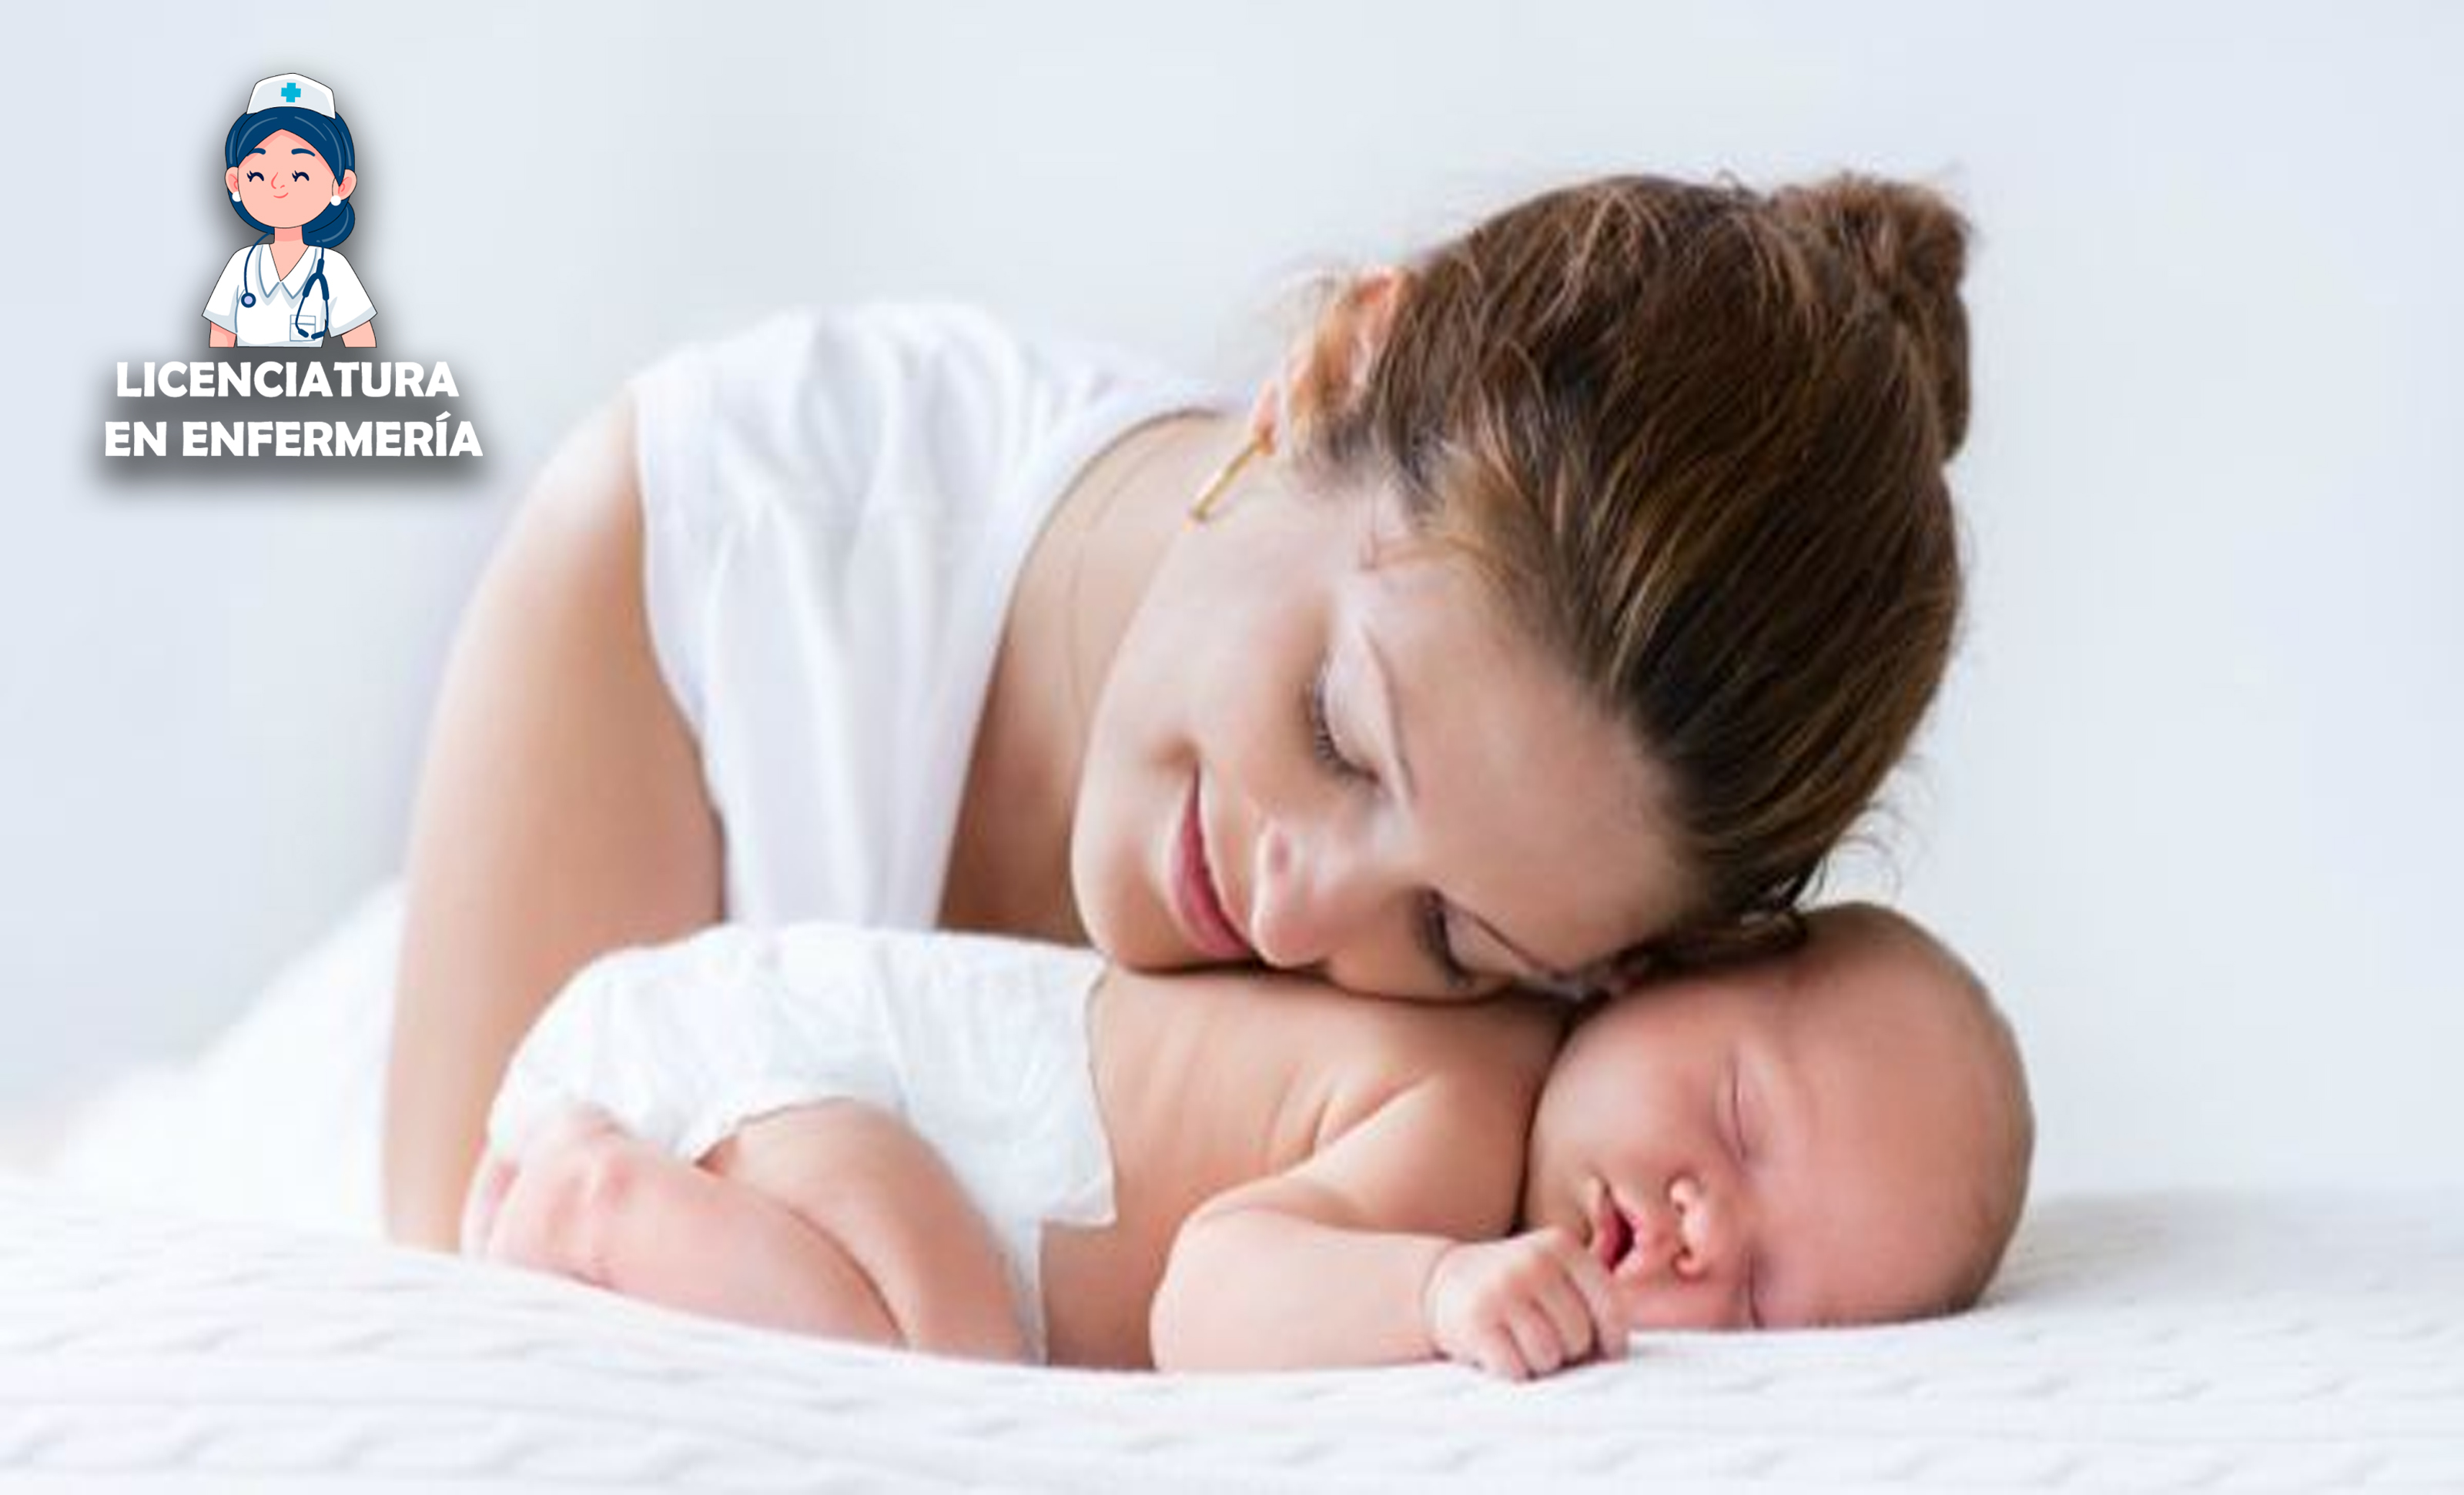 ¿Cómo cuidar a un bebé recién nacido? Conoce los consejos más importantes